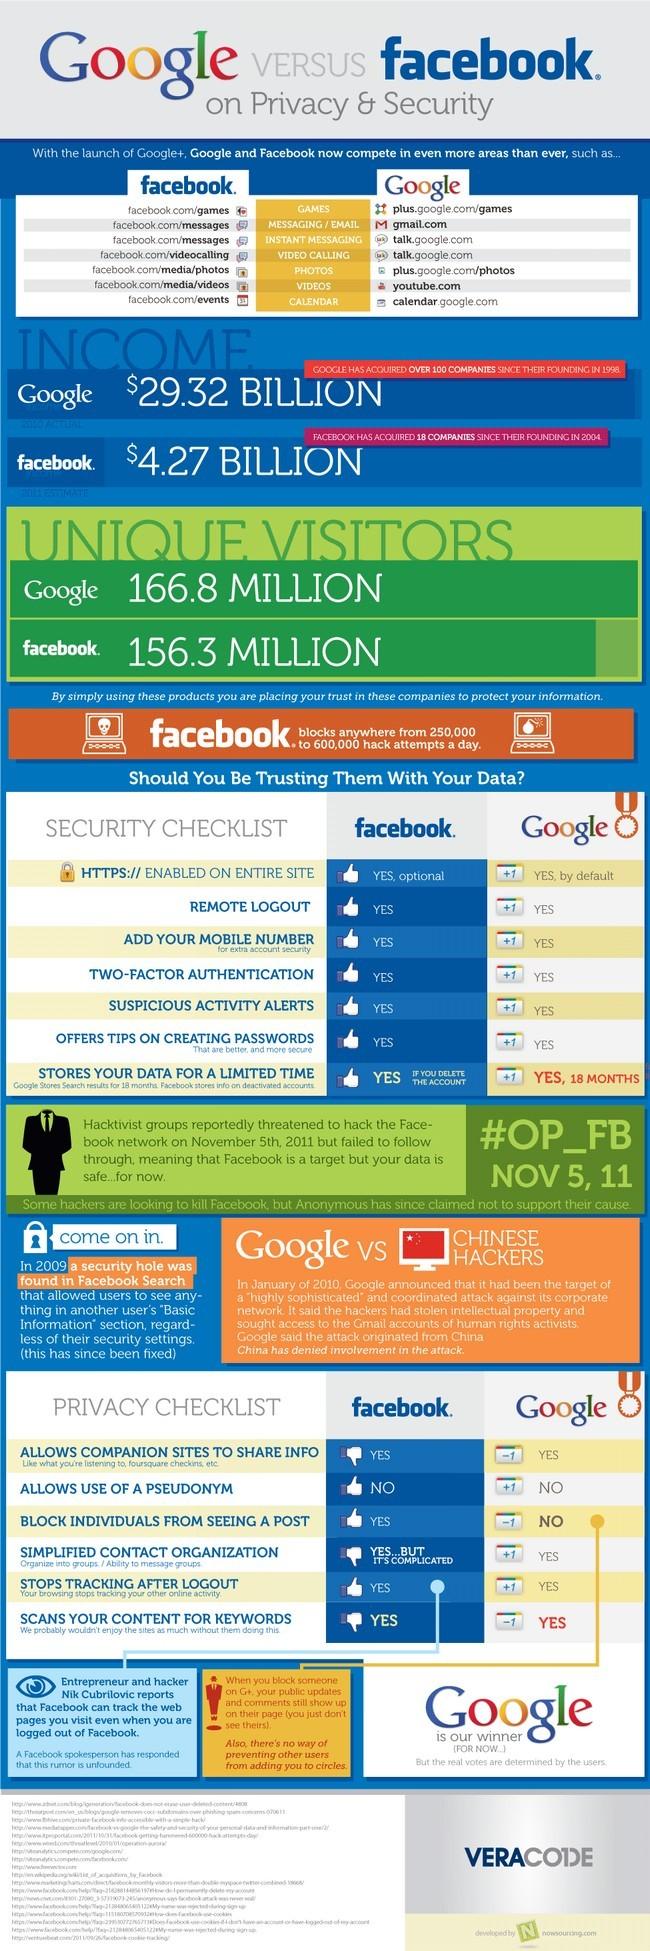 Image qui traite de la différence de protection de donnée entre Facebook et Google Plus